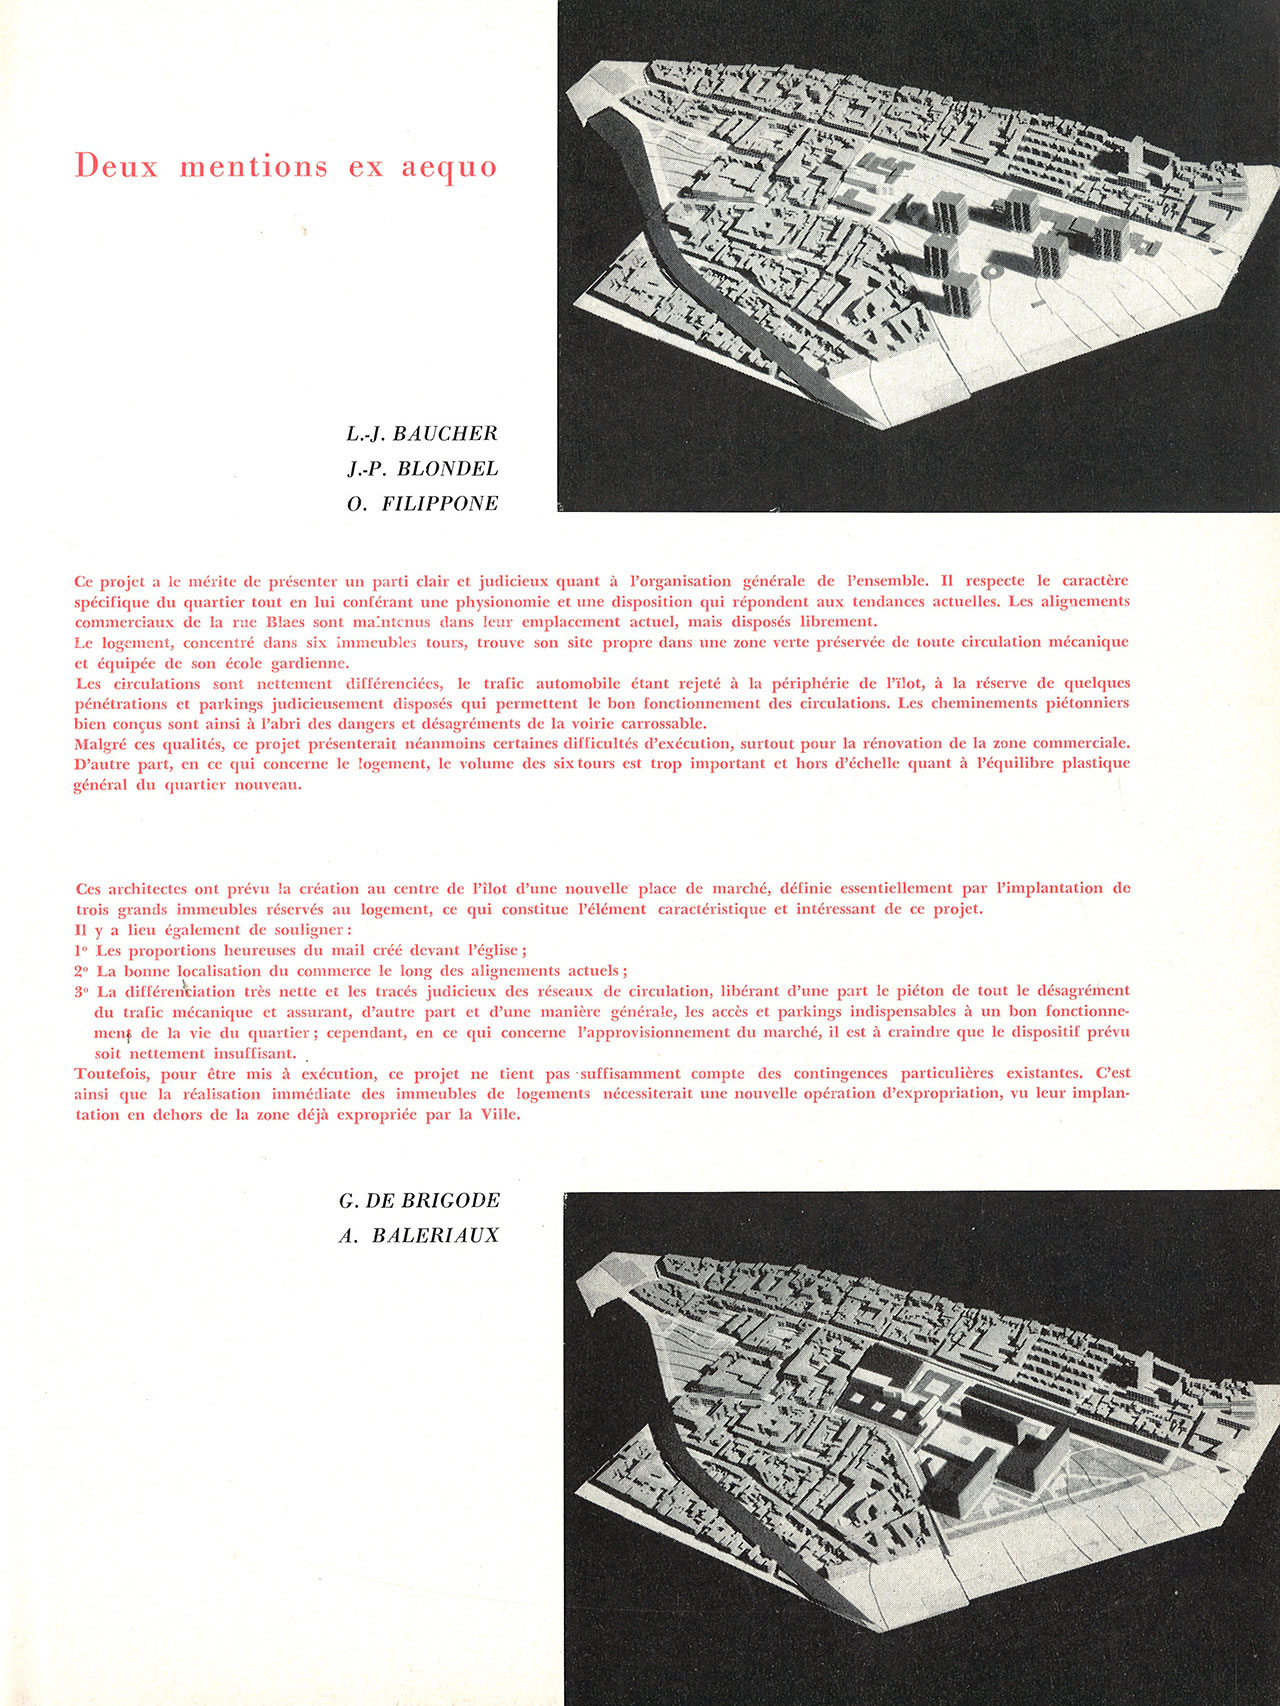 Concours d’idées 1961 de la Ville de Bruxelles